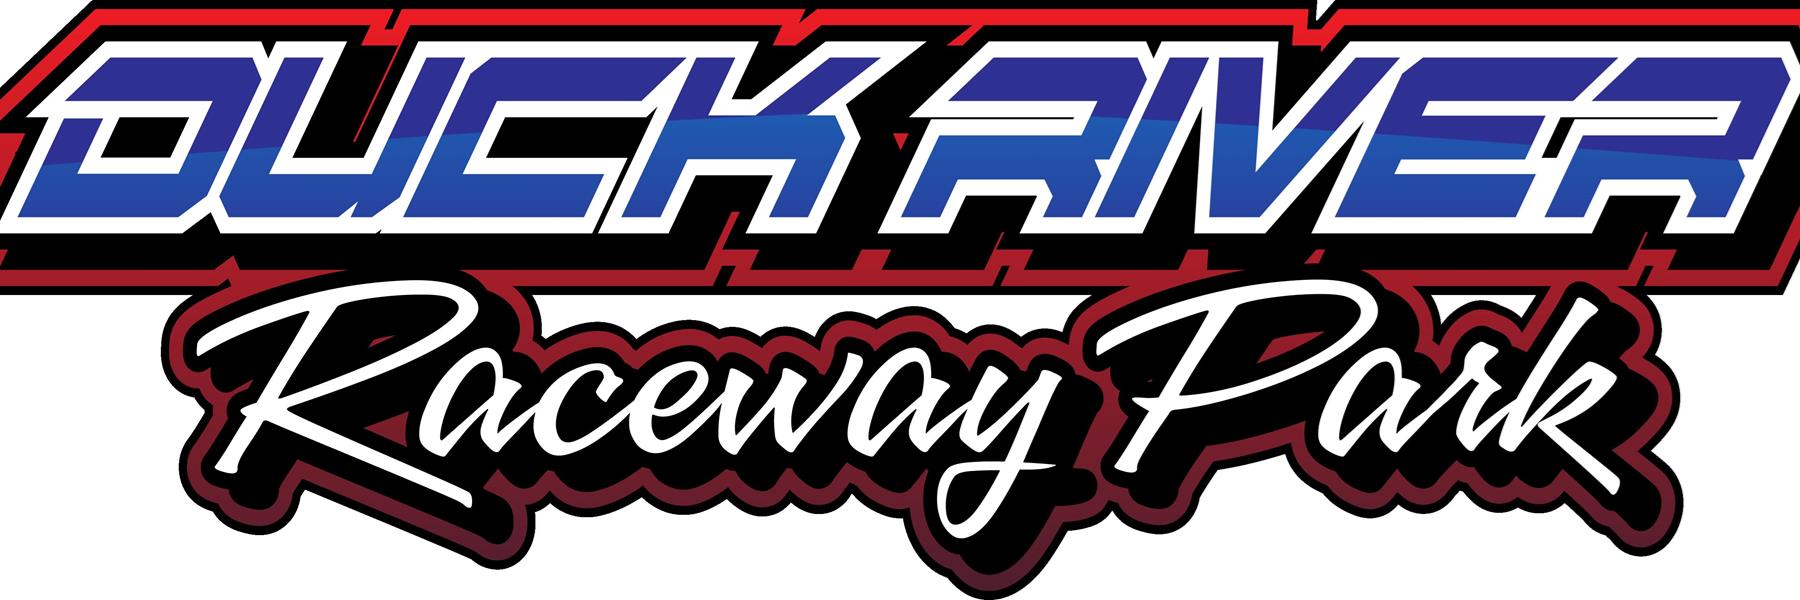 5/29/2022 - Duck River Raceway Park